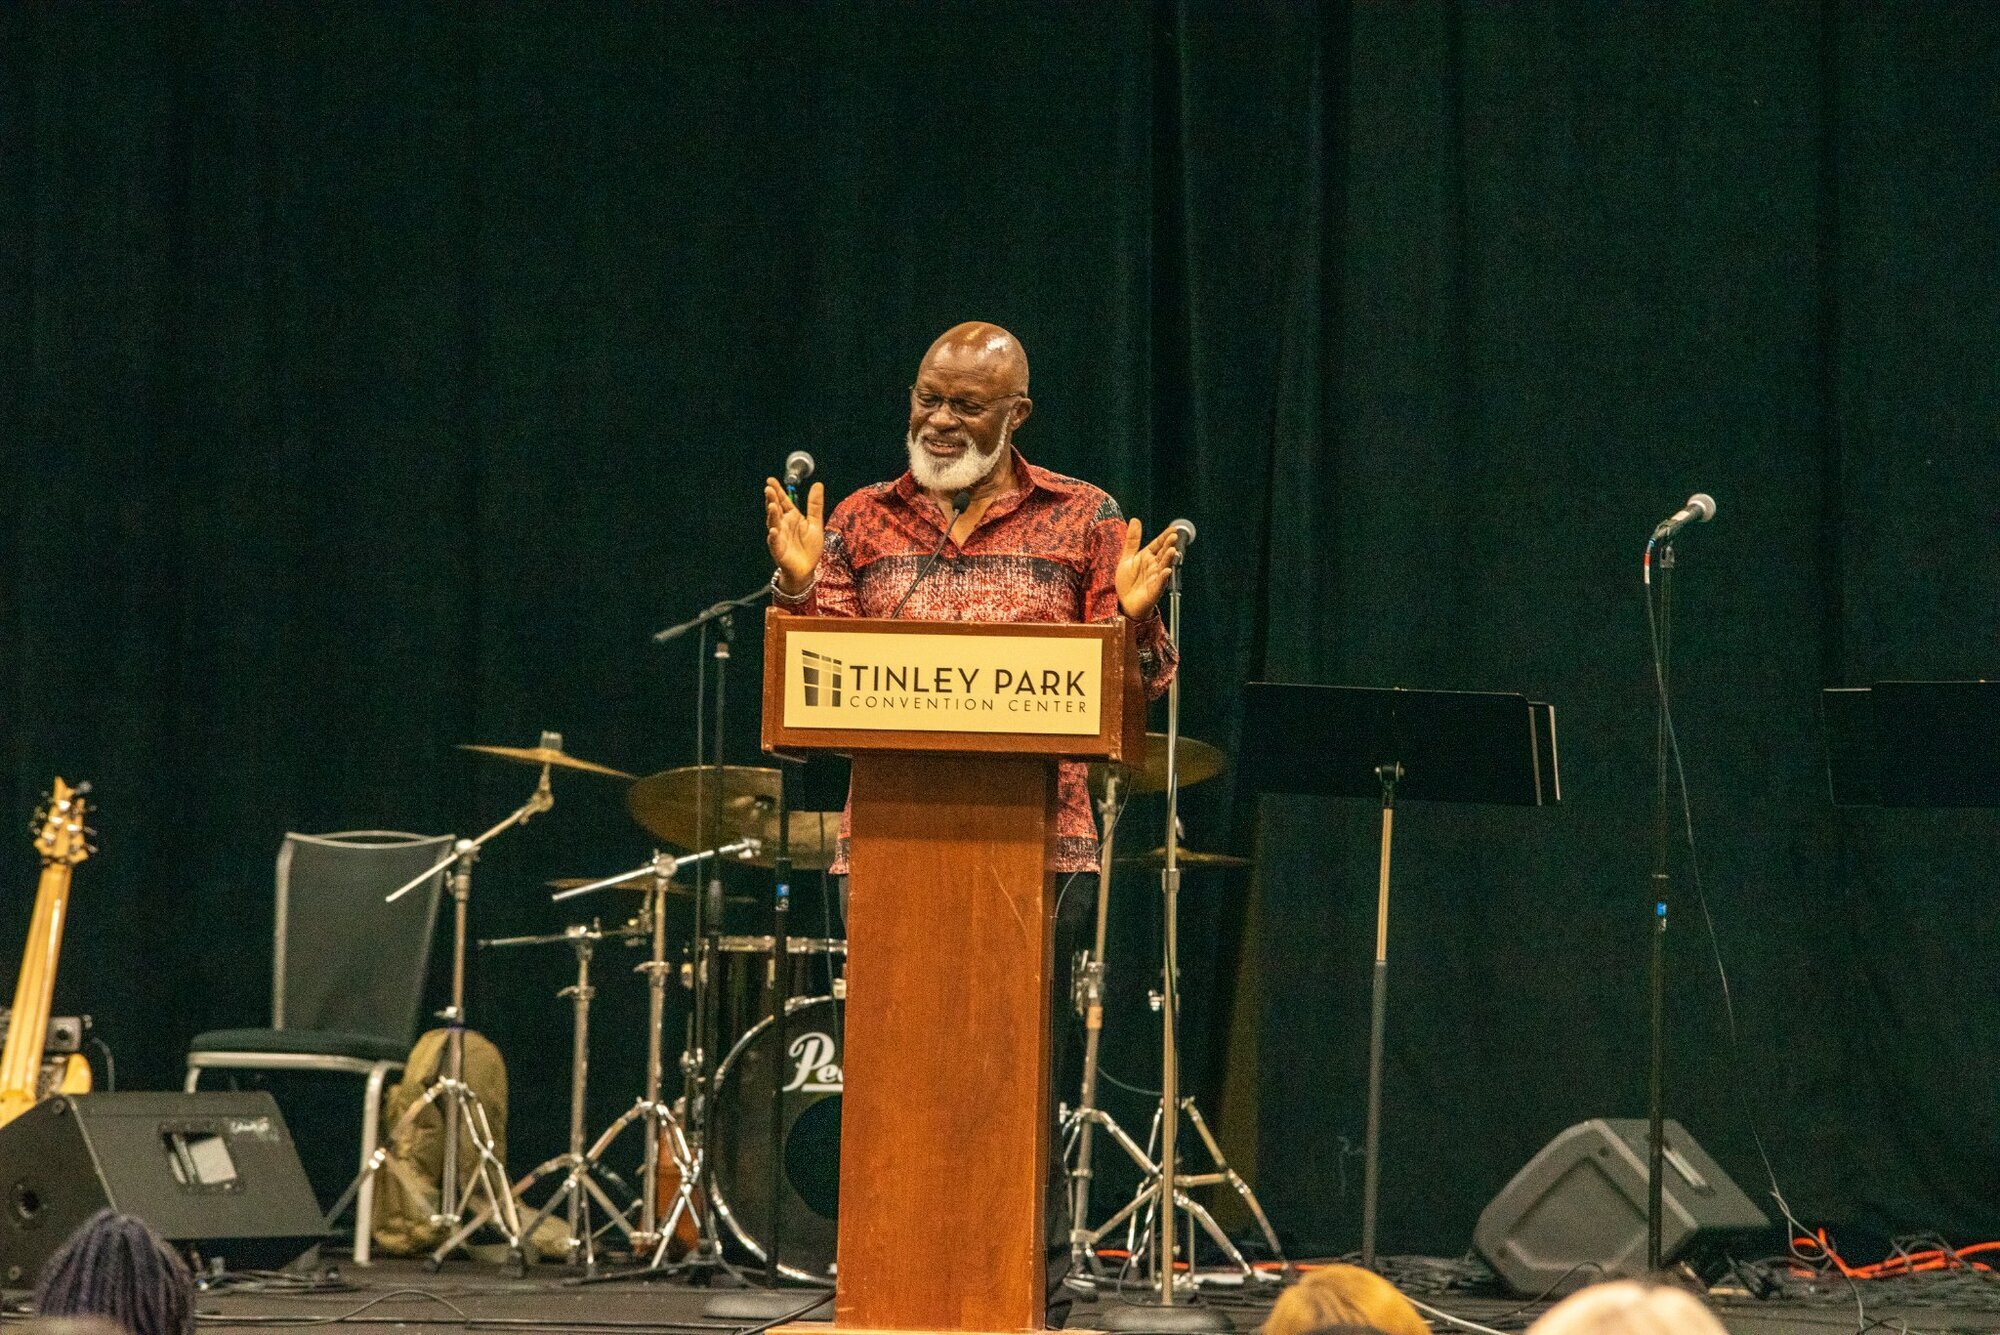 a black man speaking at a podium